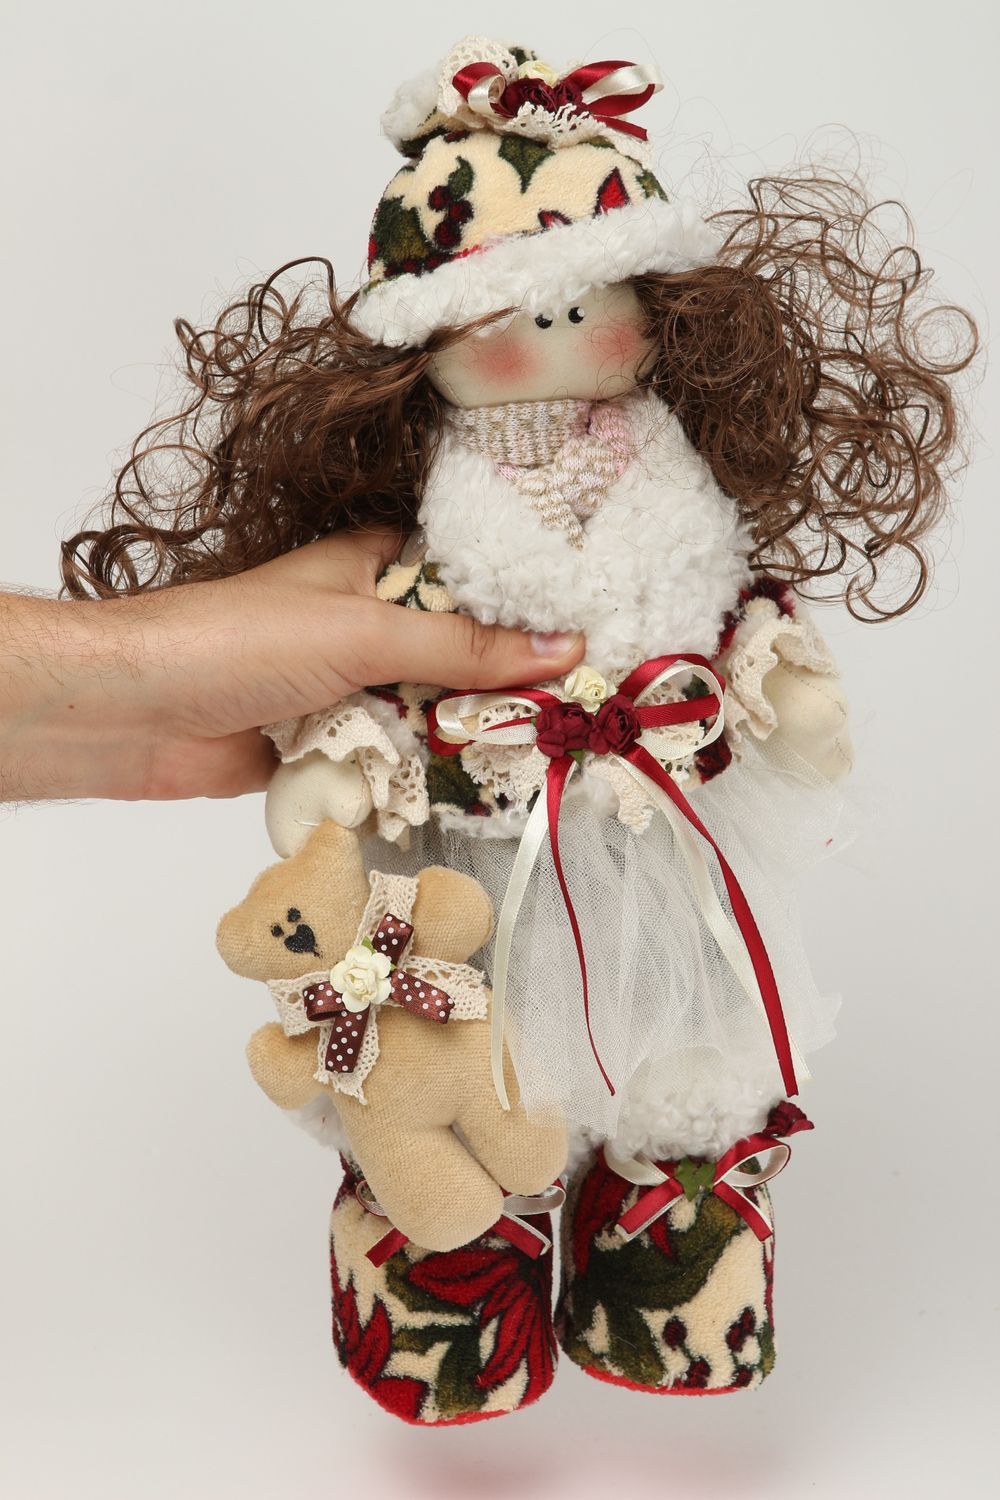 Handmade doll handmade rag doll interior dolls soft toys for children baby gift photo 5